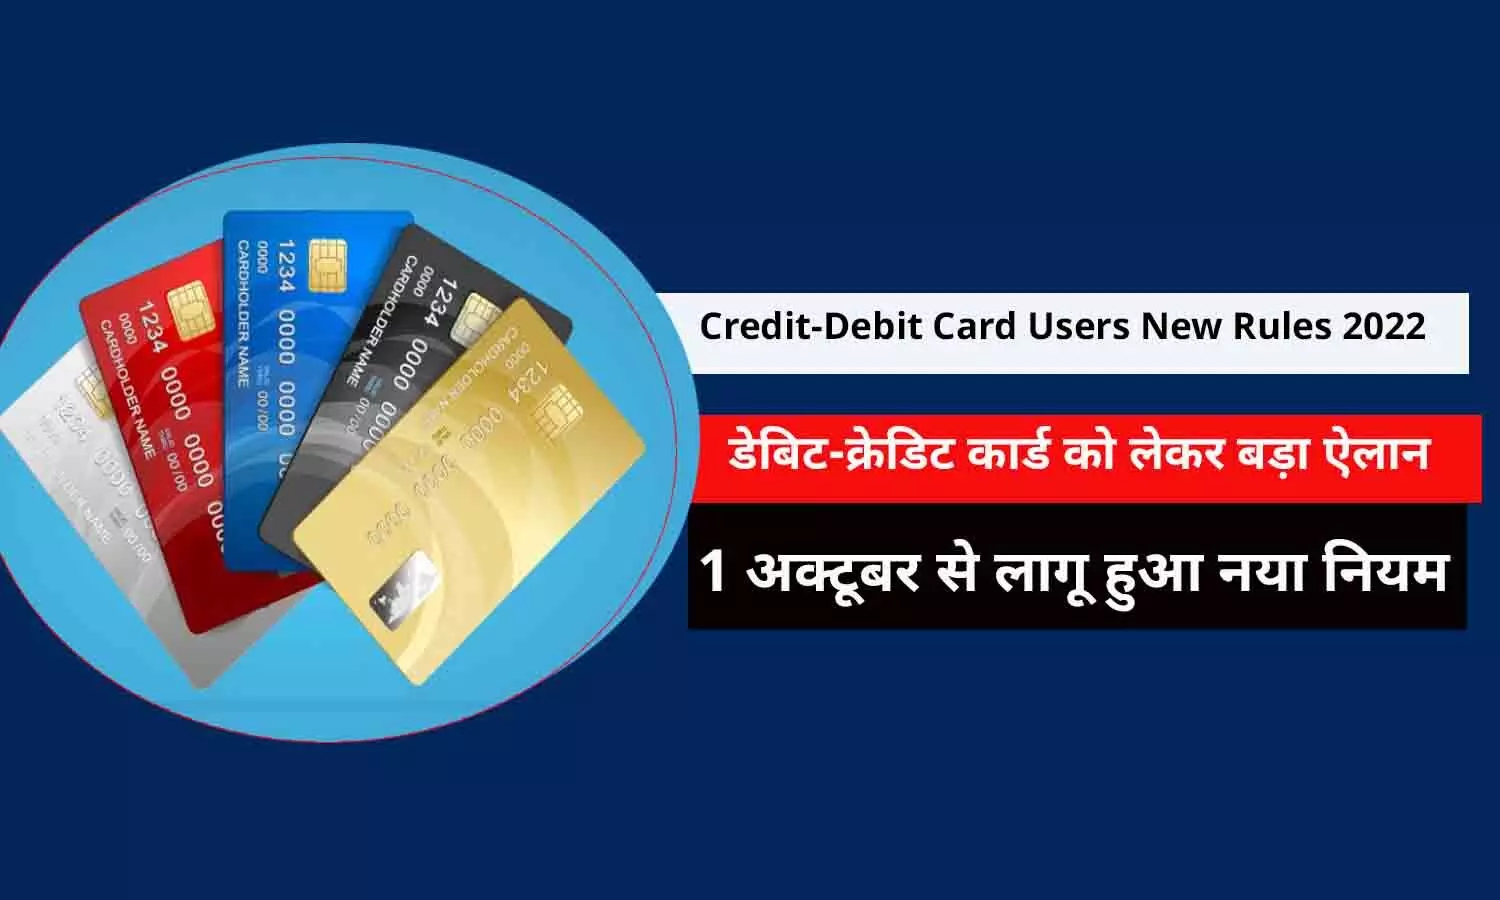 Credit-Debit Card Users New Rules 2022 In Hindi: डेबिट-क्रेडिट कार्ड को लेकर बड़ा ऐलान, 1 अक्टूबर से लागू हुआ नया नियम